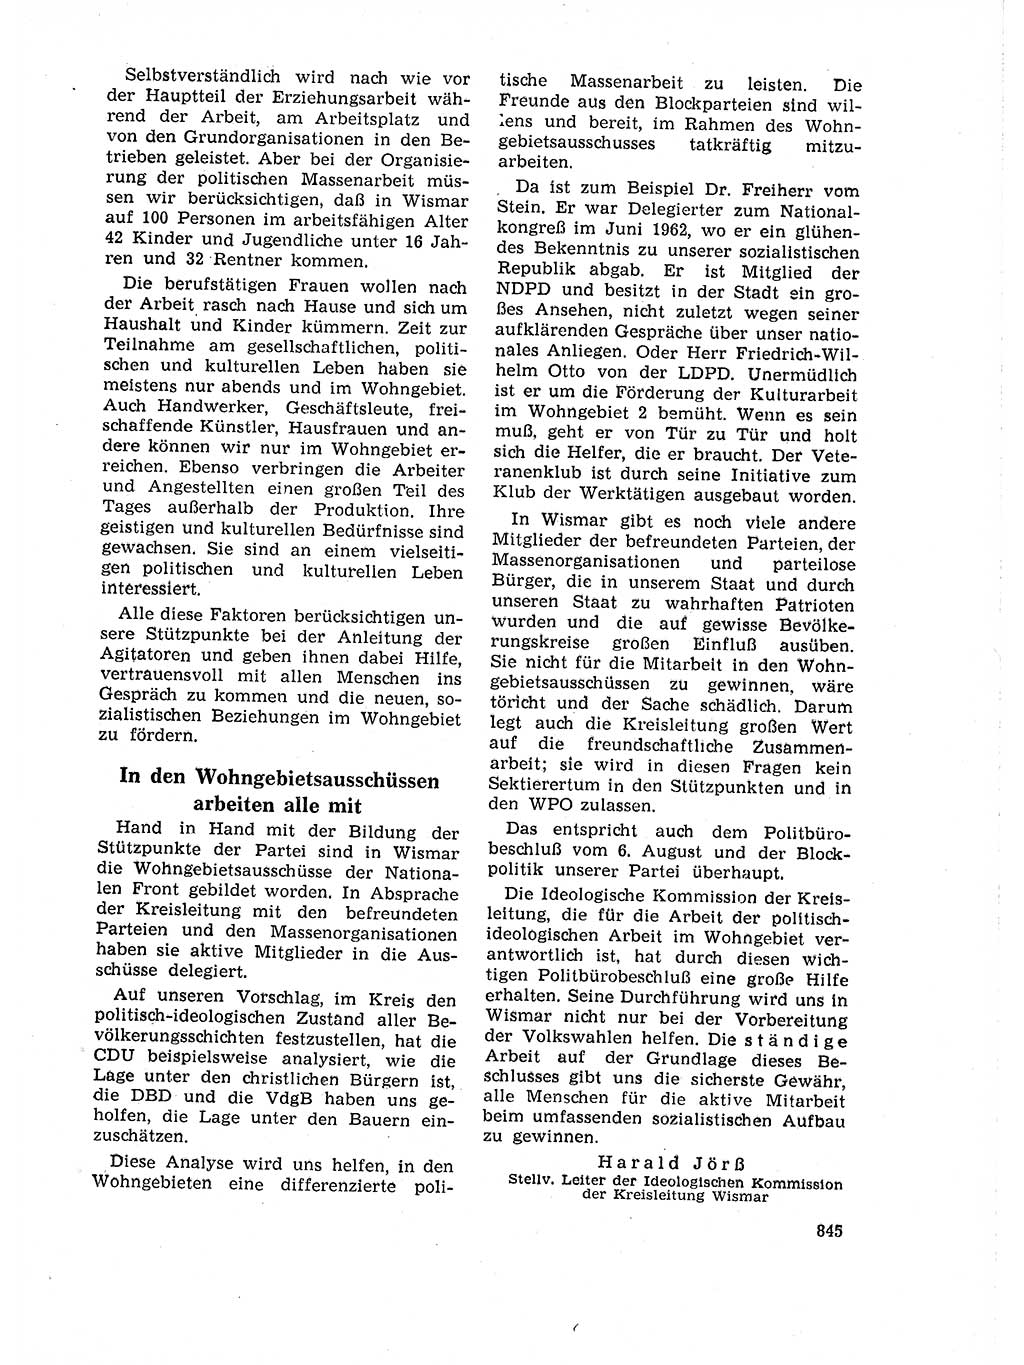 Neuer Weg (NW), Organ des Zentralkomitees (ZK) der SED (Sozialistische Einheitspartei Deutschlands) für Fragen des Parteilebens, 18. Jahrgang [Deutsche Demokratische Republik (DDR)] 1963, Seite 845 (NW ZK SED DDR 1963, S. 845)